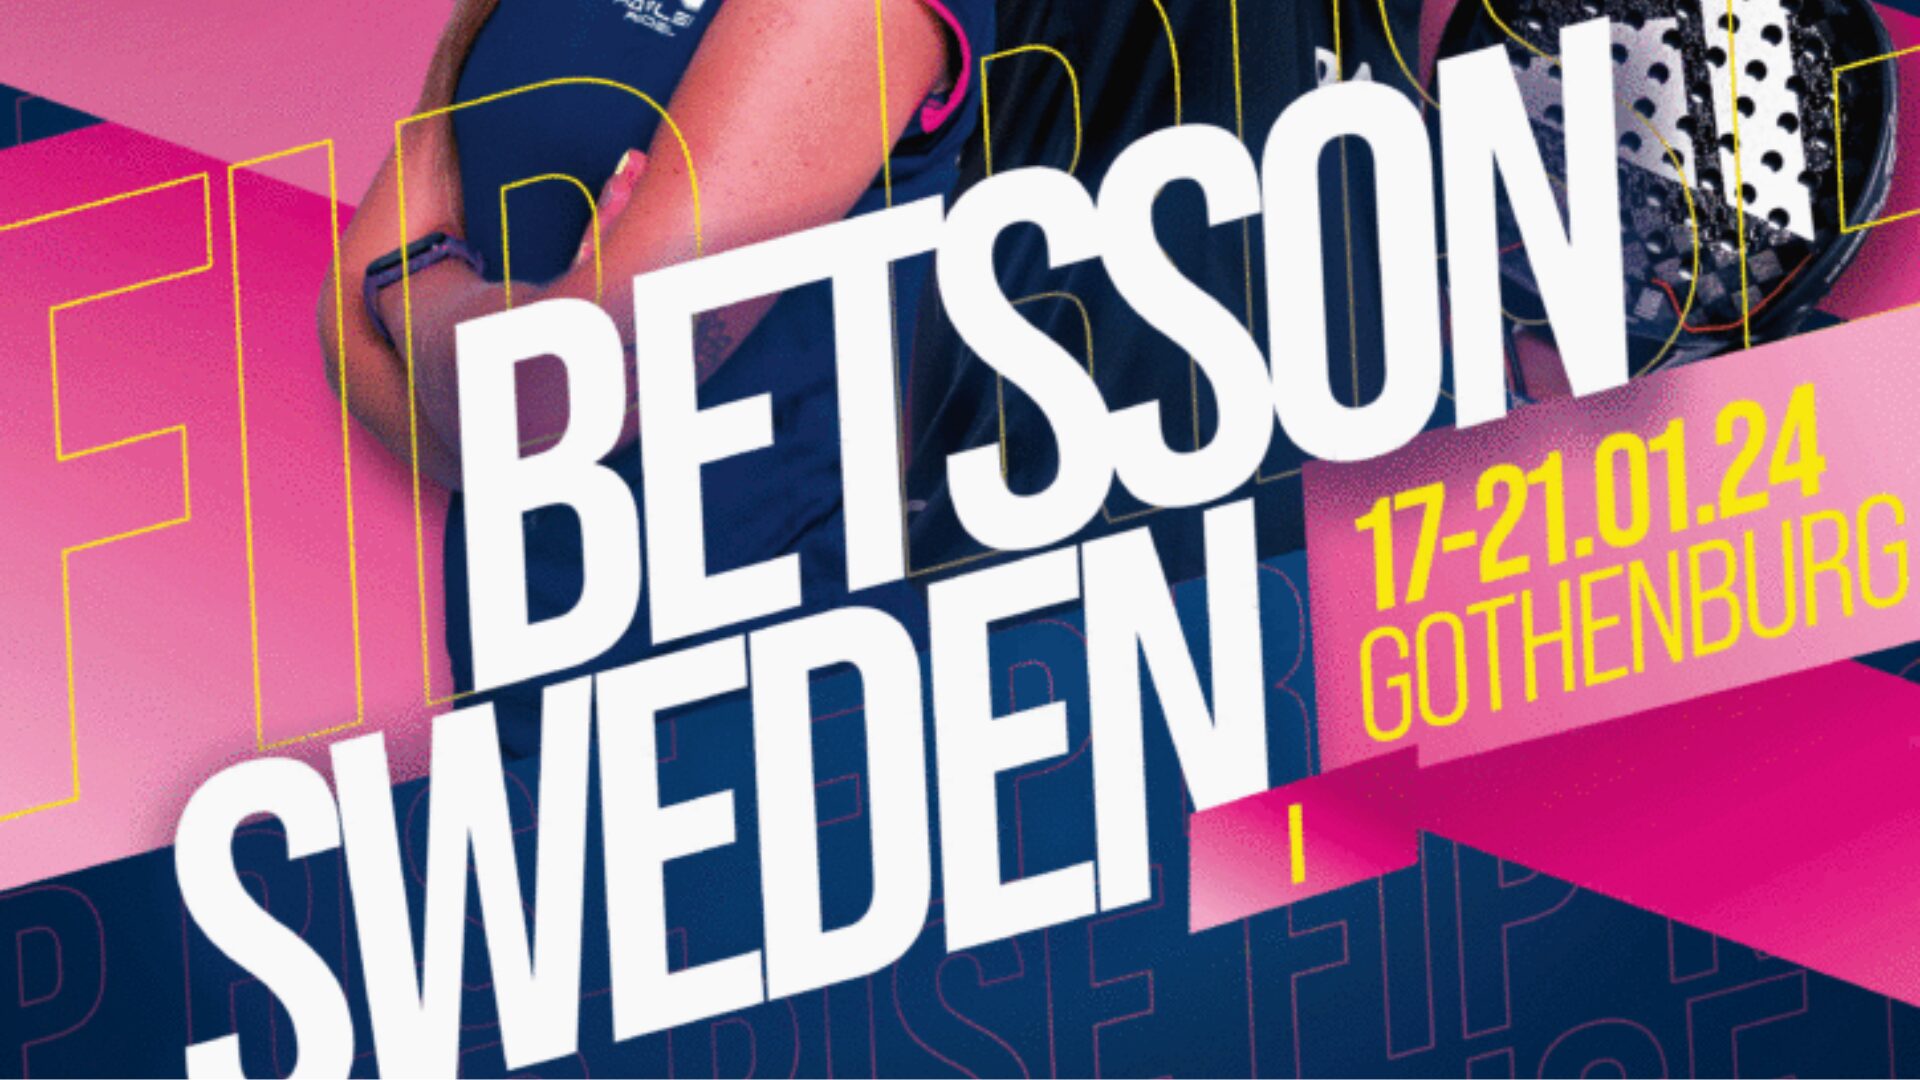 Betsson Sweden FIP Rise januari 2024 Göteborg